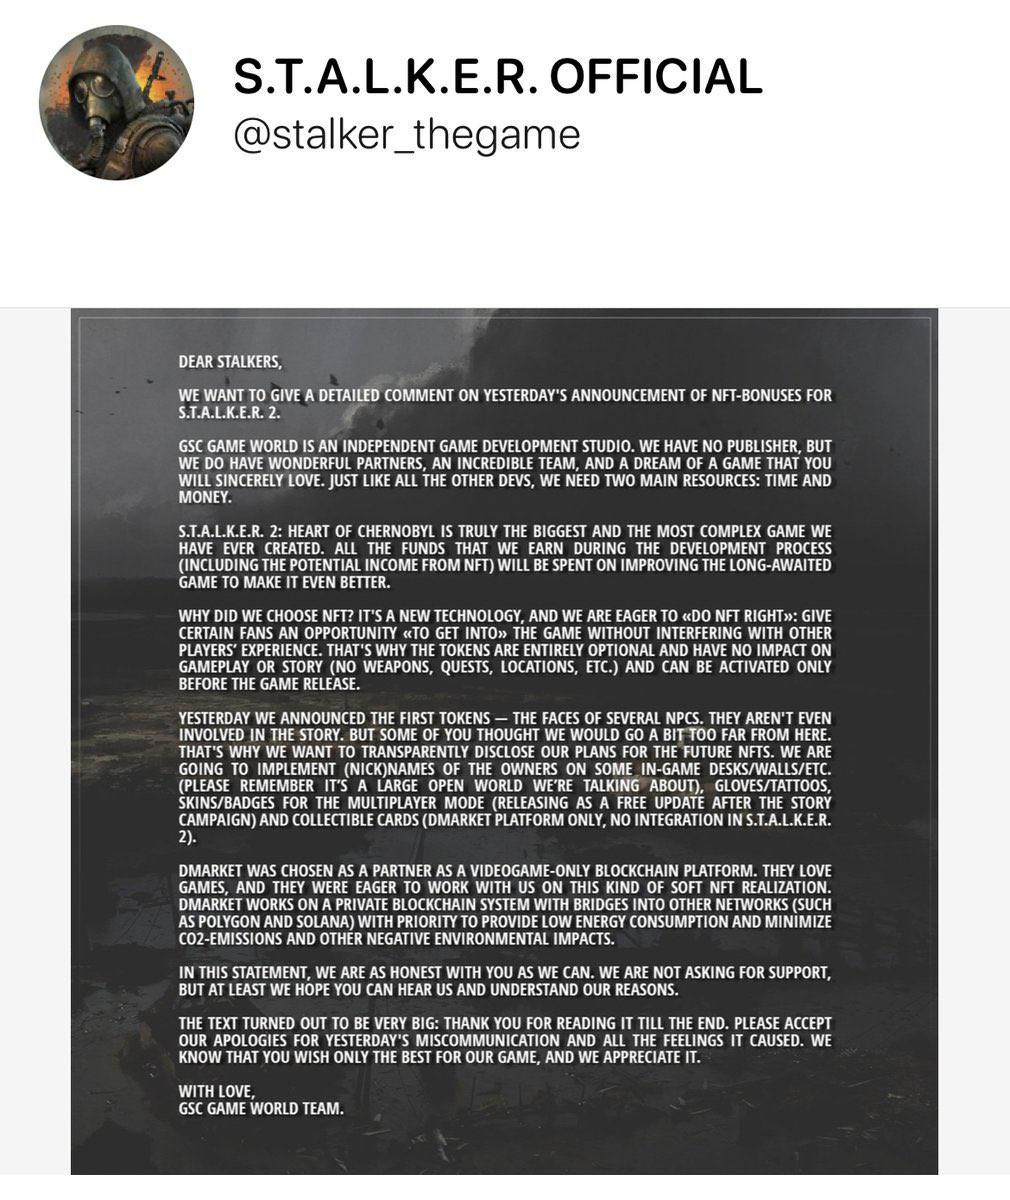 STALKER 2 developers abandon in-game NFT NPC plans after fans